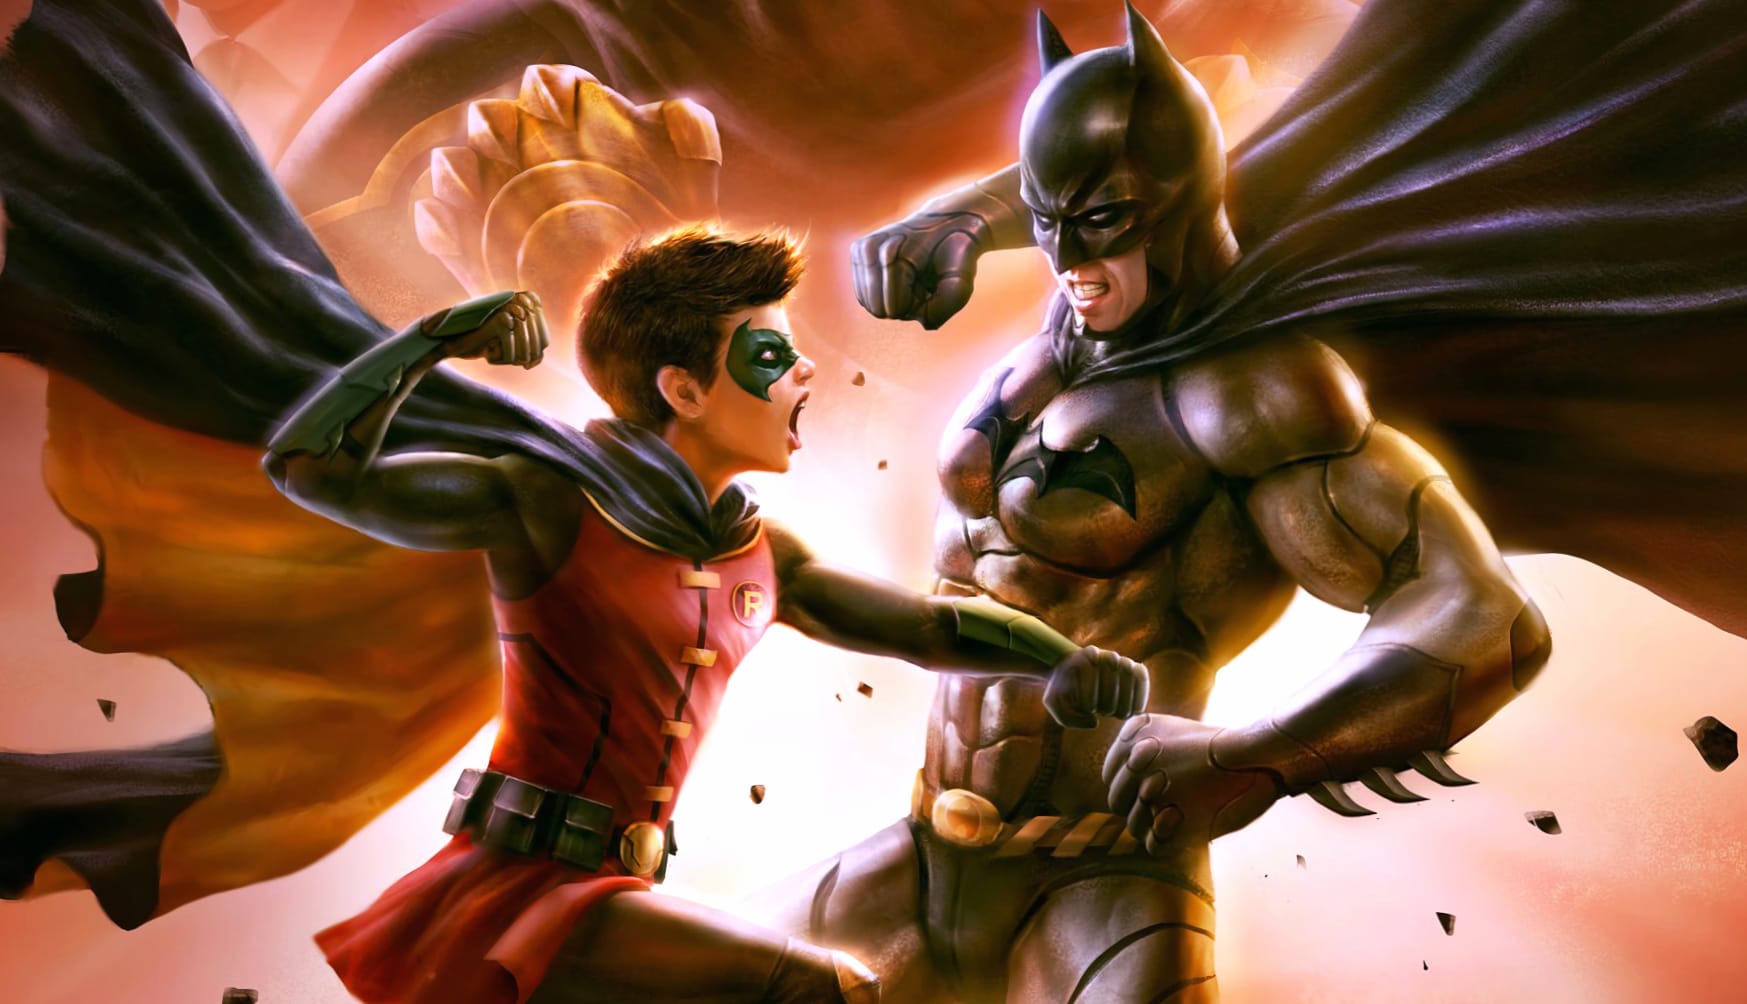 Batman vs. Robin at 1024 x 1024 iPad size wallpapers HD quality